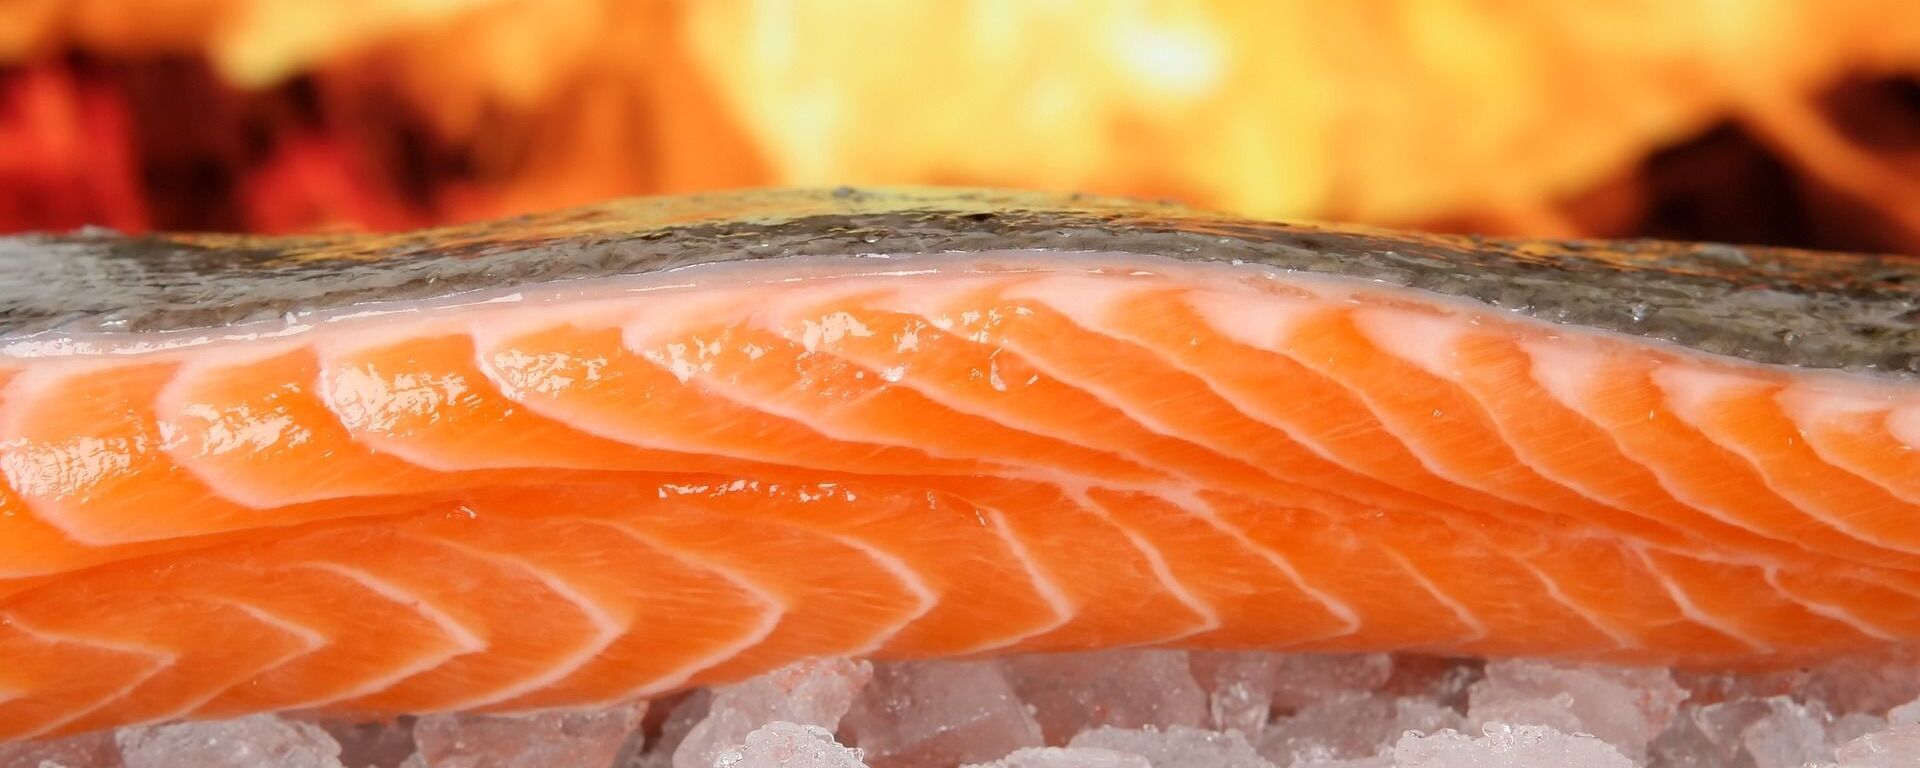 Un salmón utilizado para la gastronomía - Sputnik Mundo, 1920, 05.09.2019